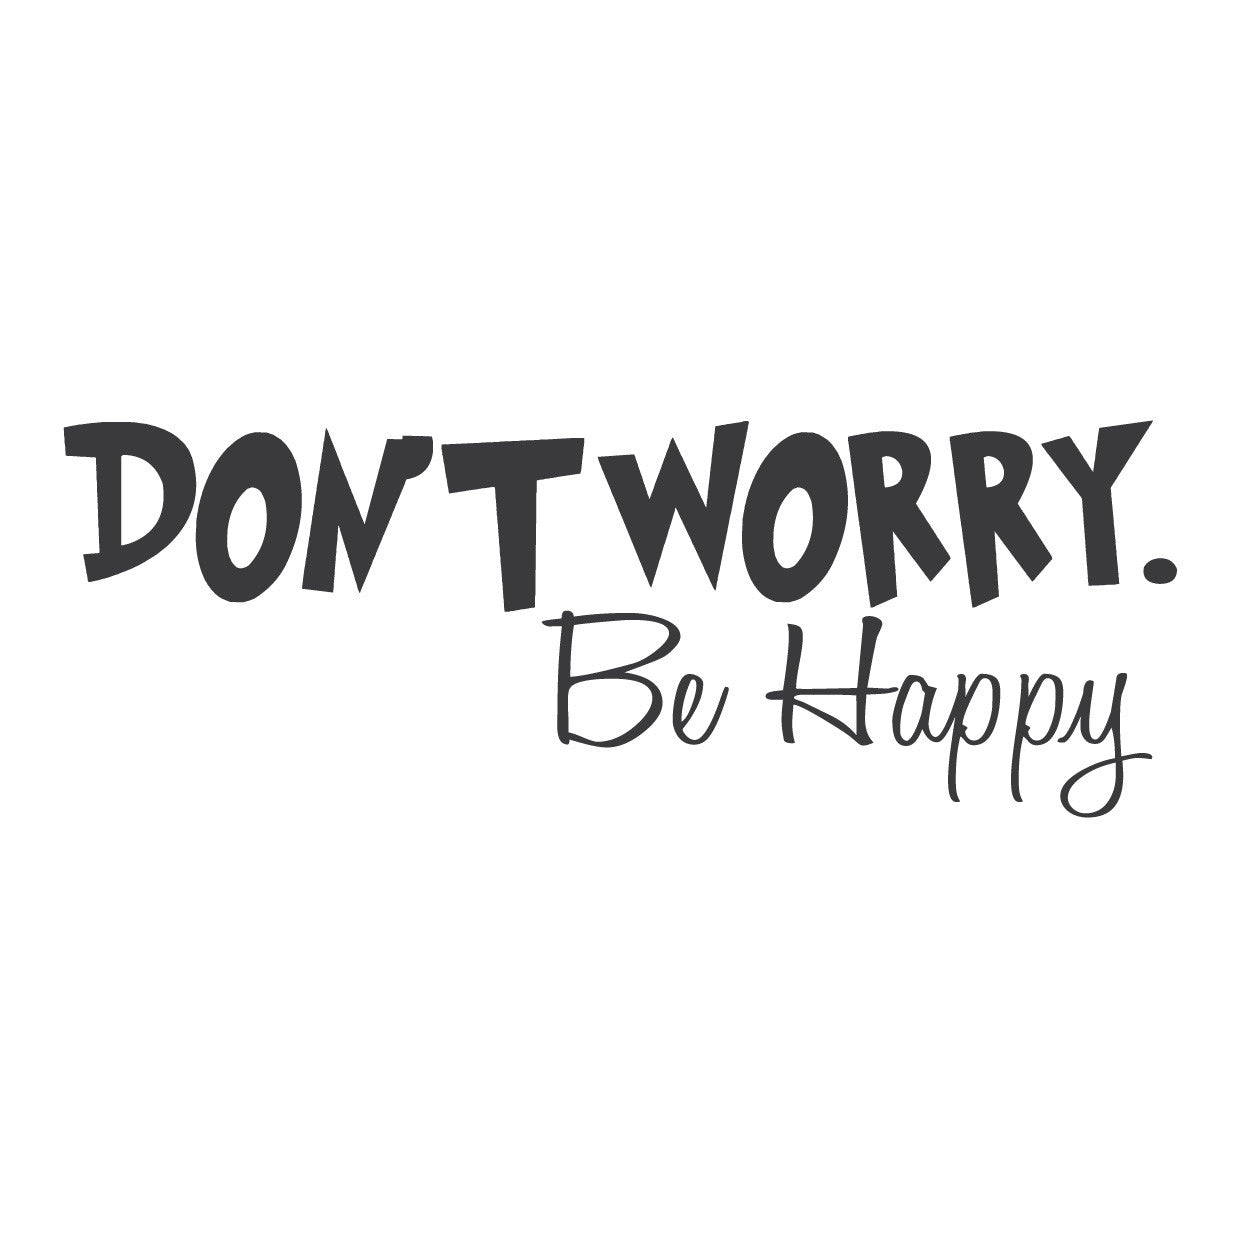 Dont happy